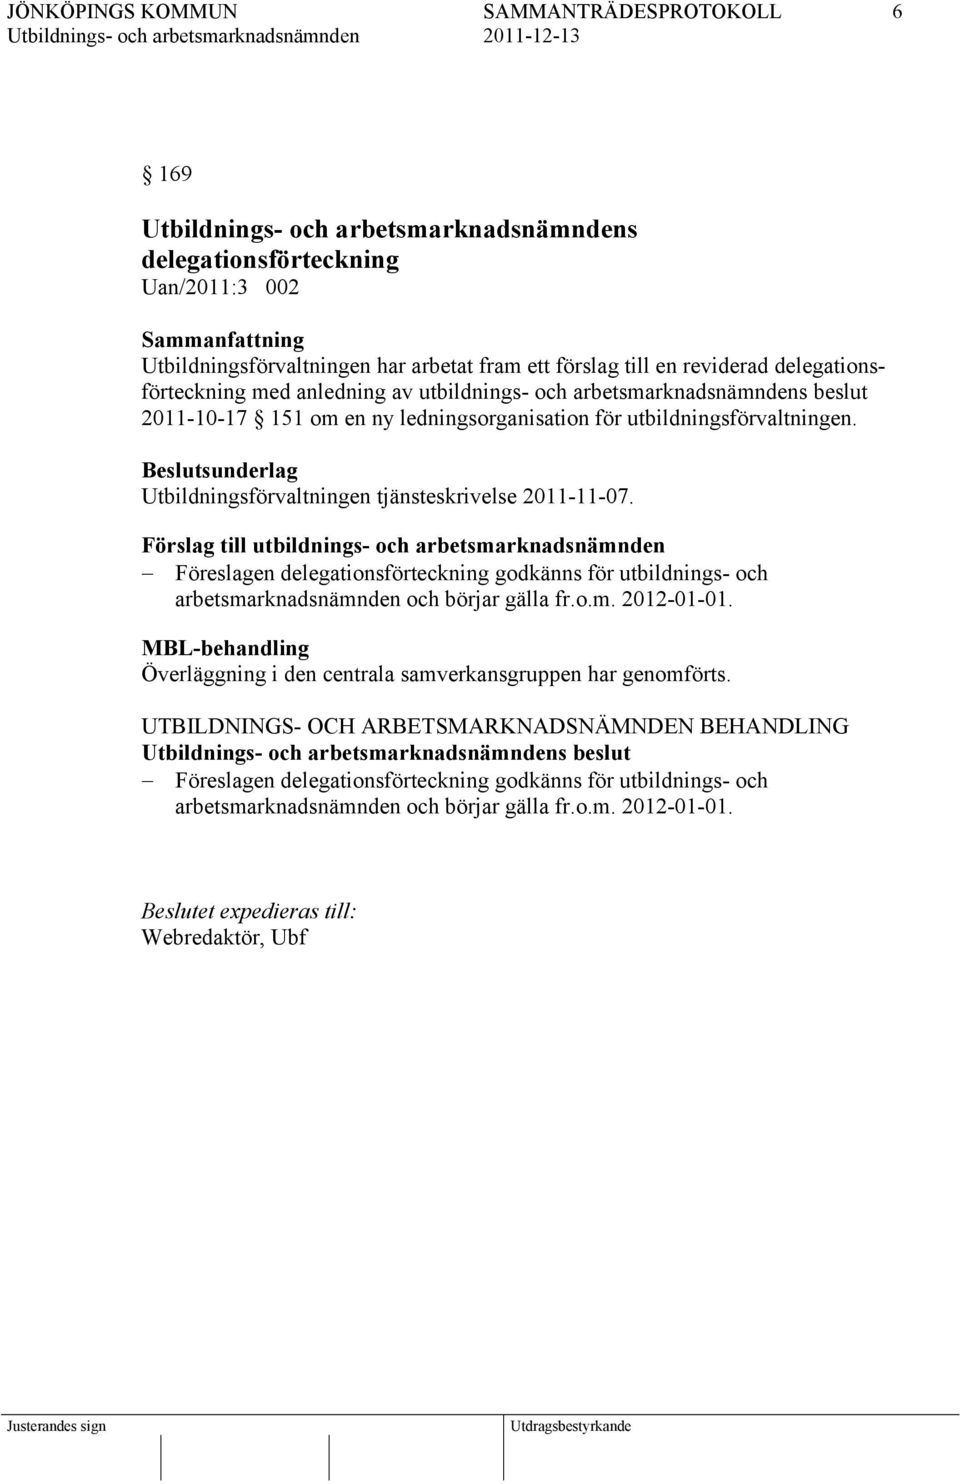 Förslag till utbildnings- och arbetsmarknadsnämnden Föreslagen delegationsförteckning godkänns för utbildnings- och arbetsmarknadsnämnden och börjar gälla fr.o.m. 2012-01-01.